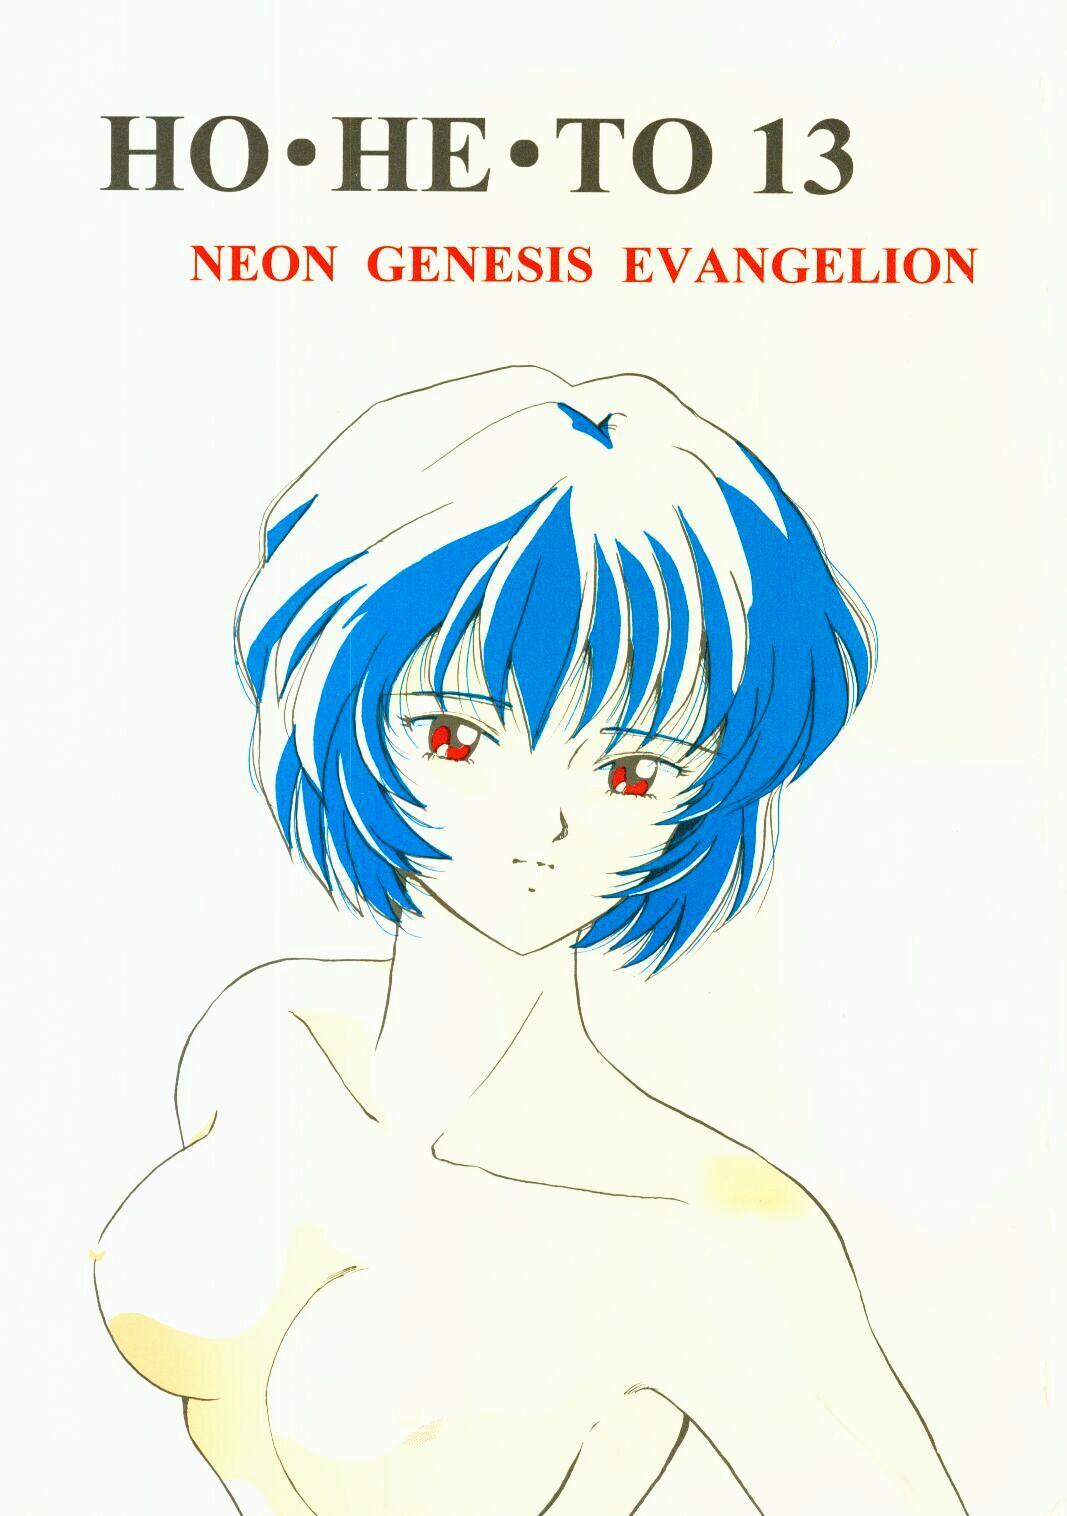 Hindi (C50) [Studio Boxer (Shima Takashi, Taka) HOHETO 13 (Neon Genesis Evangelion) - Neon genesis evangelion Fetiche - Page 1